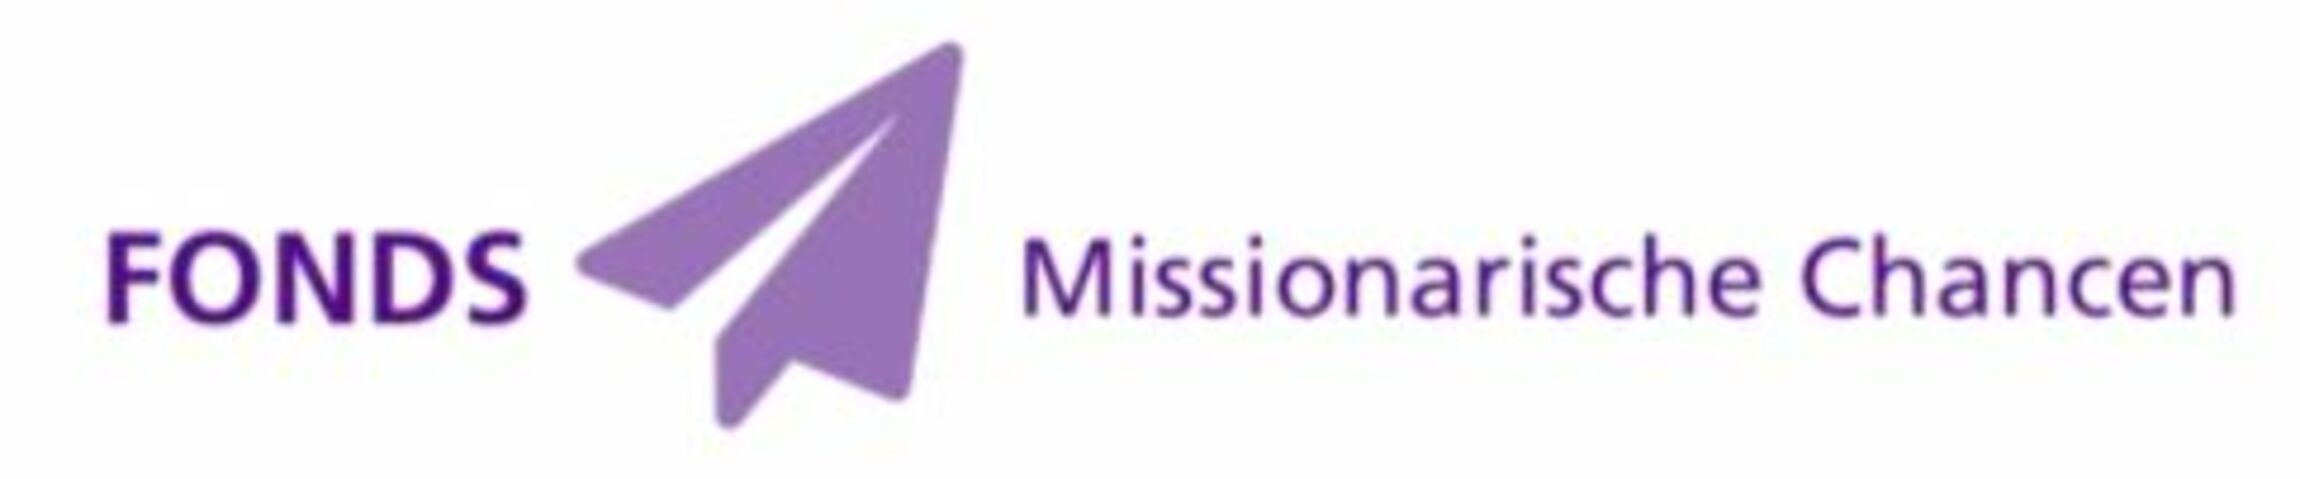 Logo Fonds Missionarische Chancen